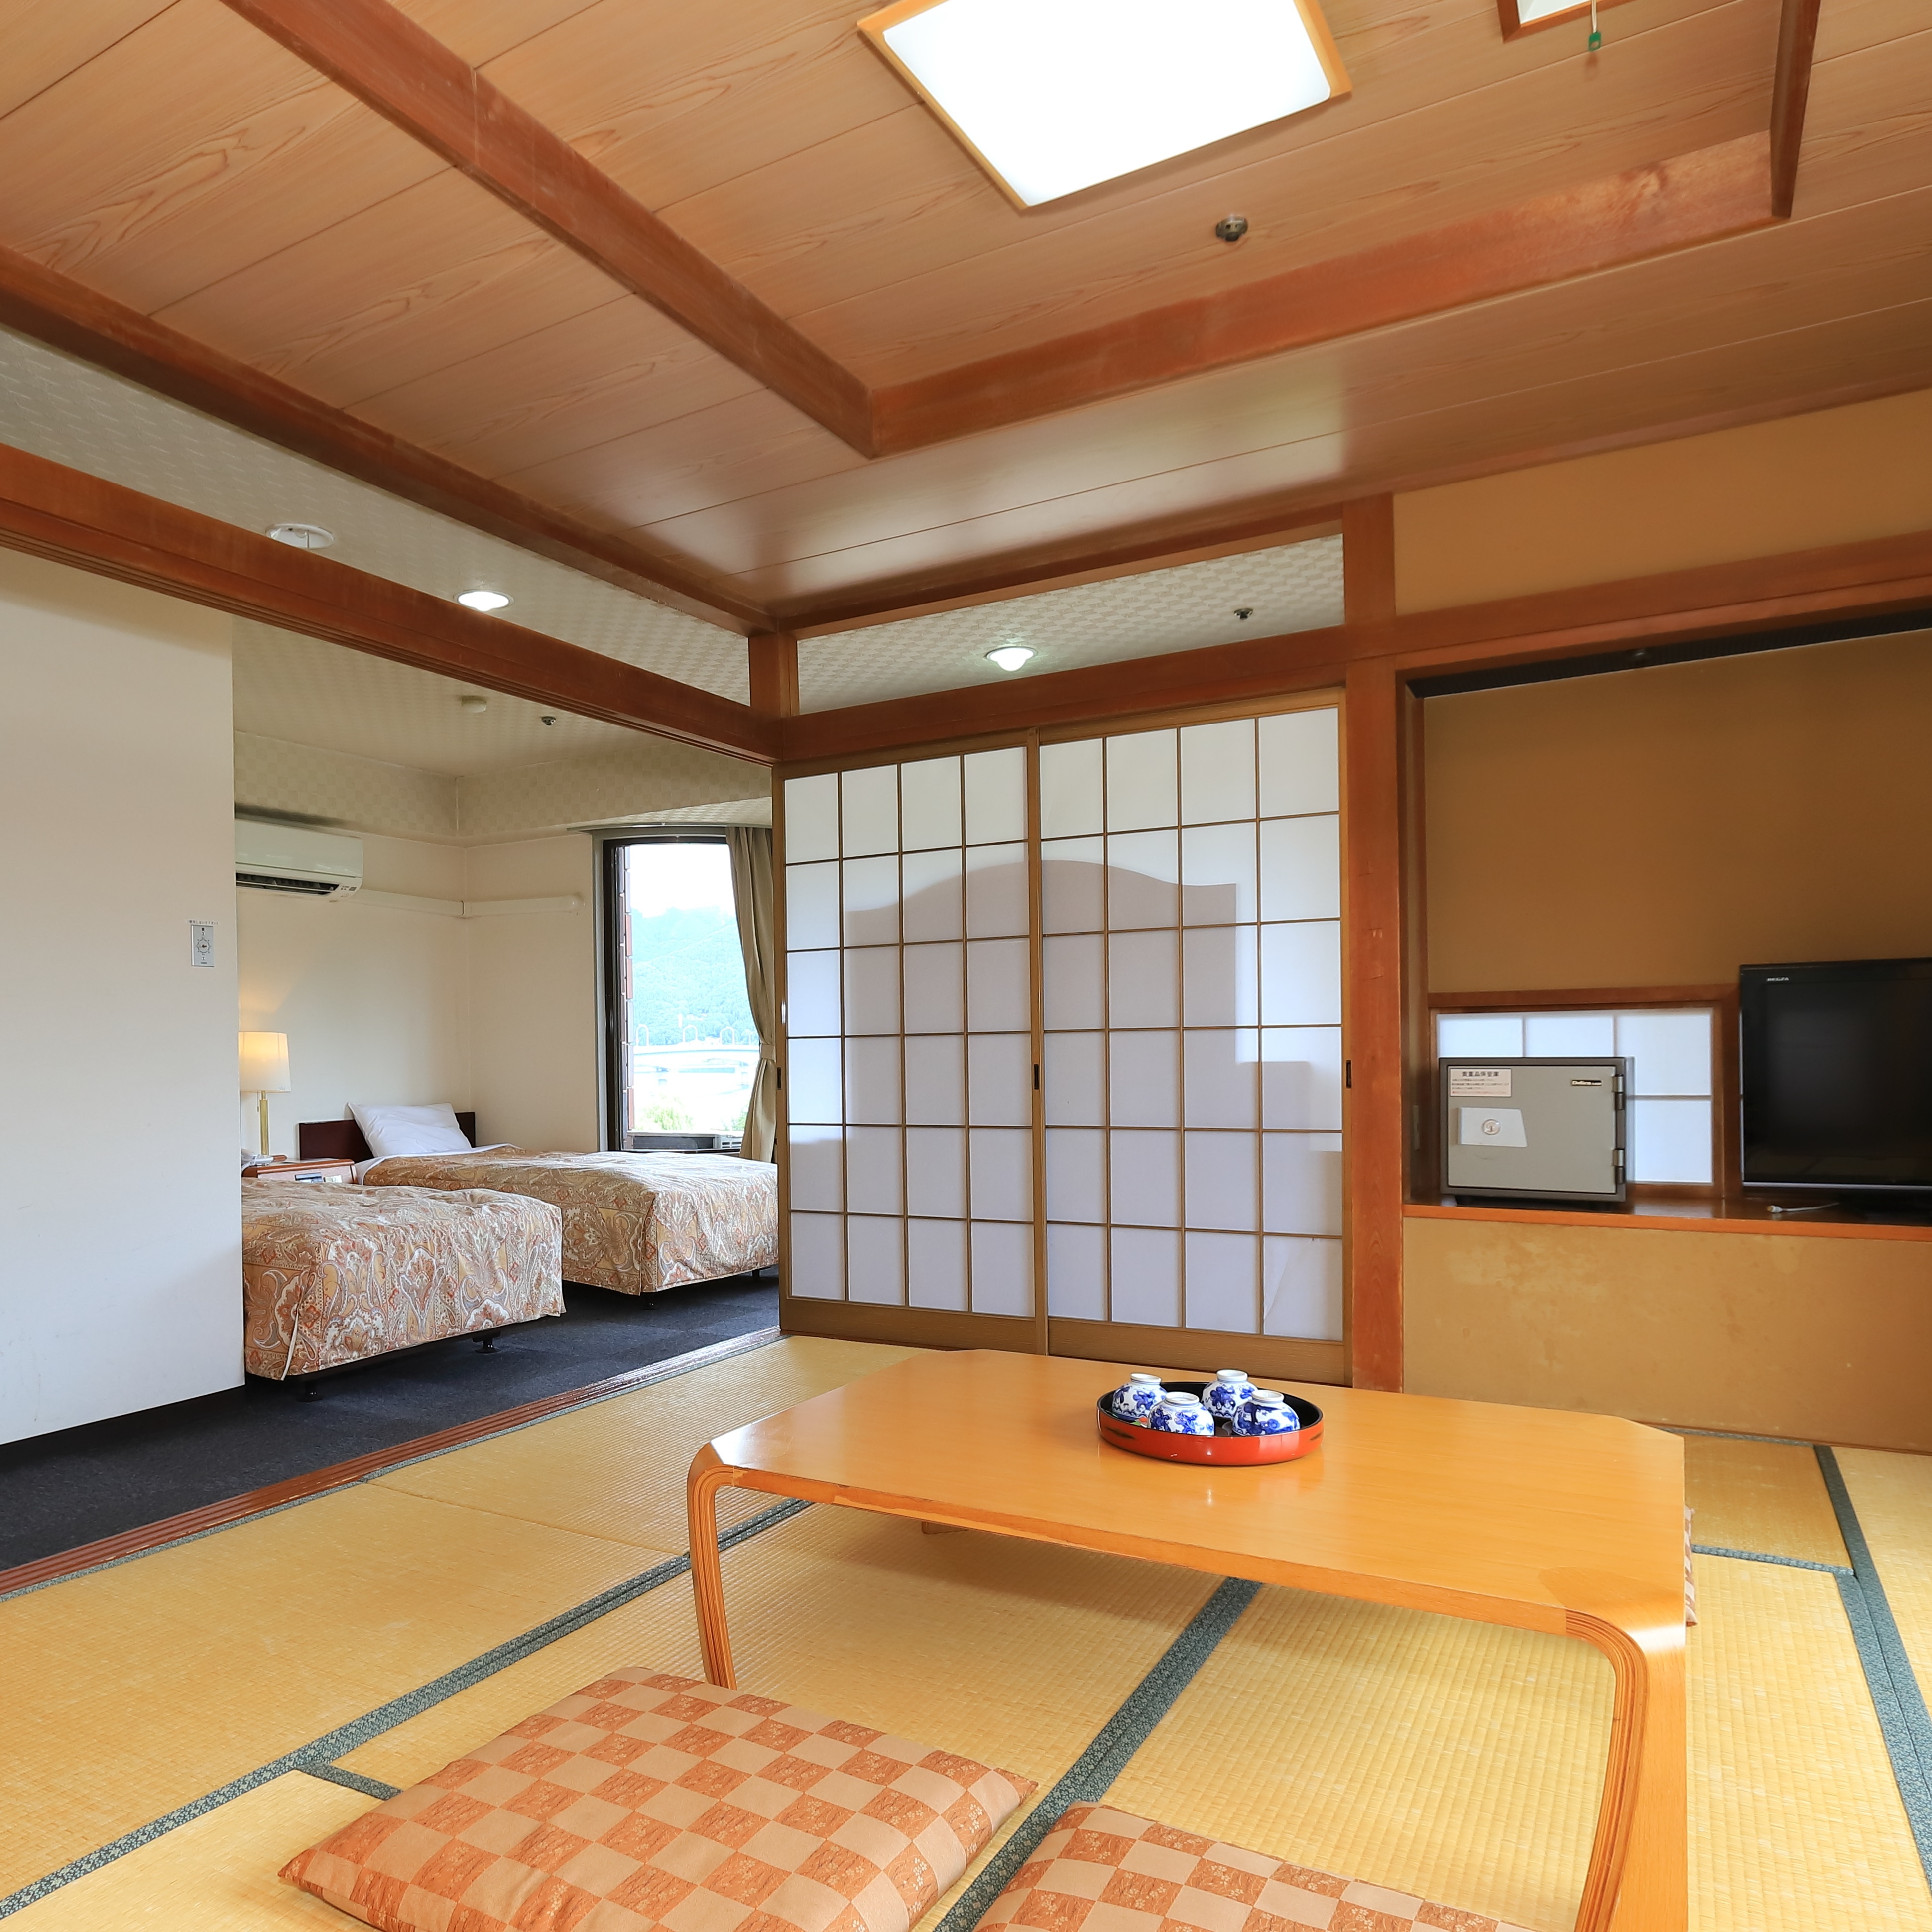 ห้องพักสไตล์ญี่ปุ่น-ตะวันตกพร้อมเตียงแฝด + เสื่อทาทามิ 10 ผืน